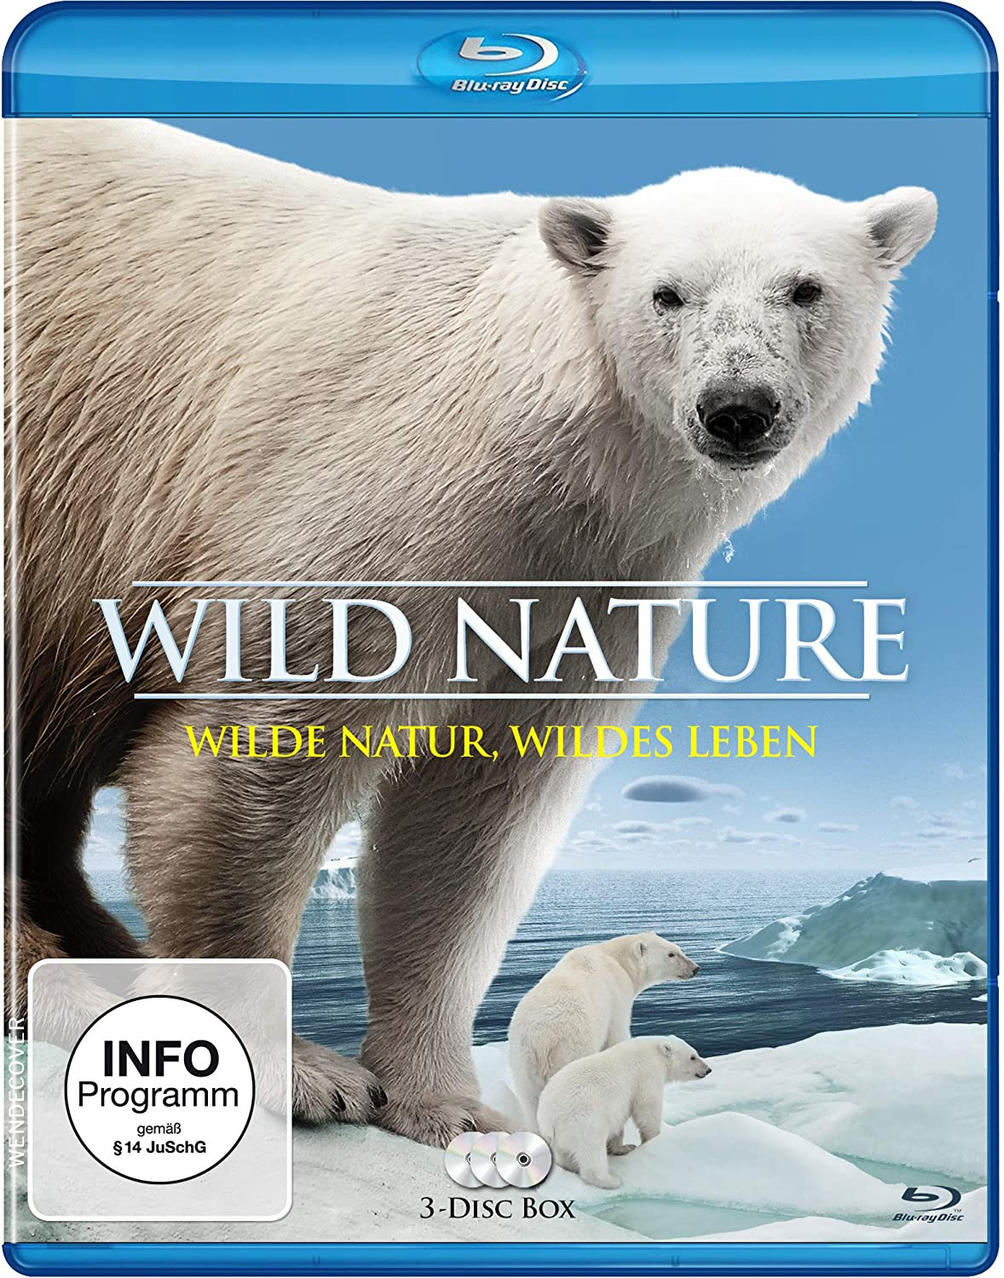 Wild Nature-Wilde Blu-ray Leben Natur,wildes